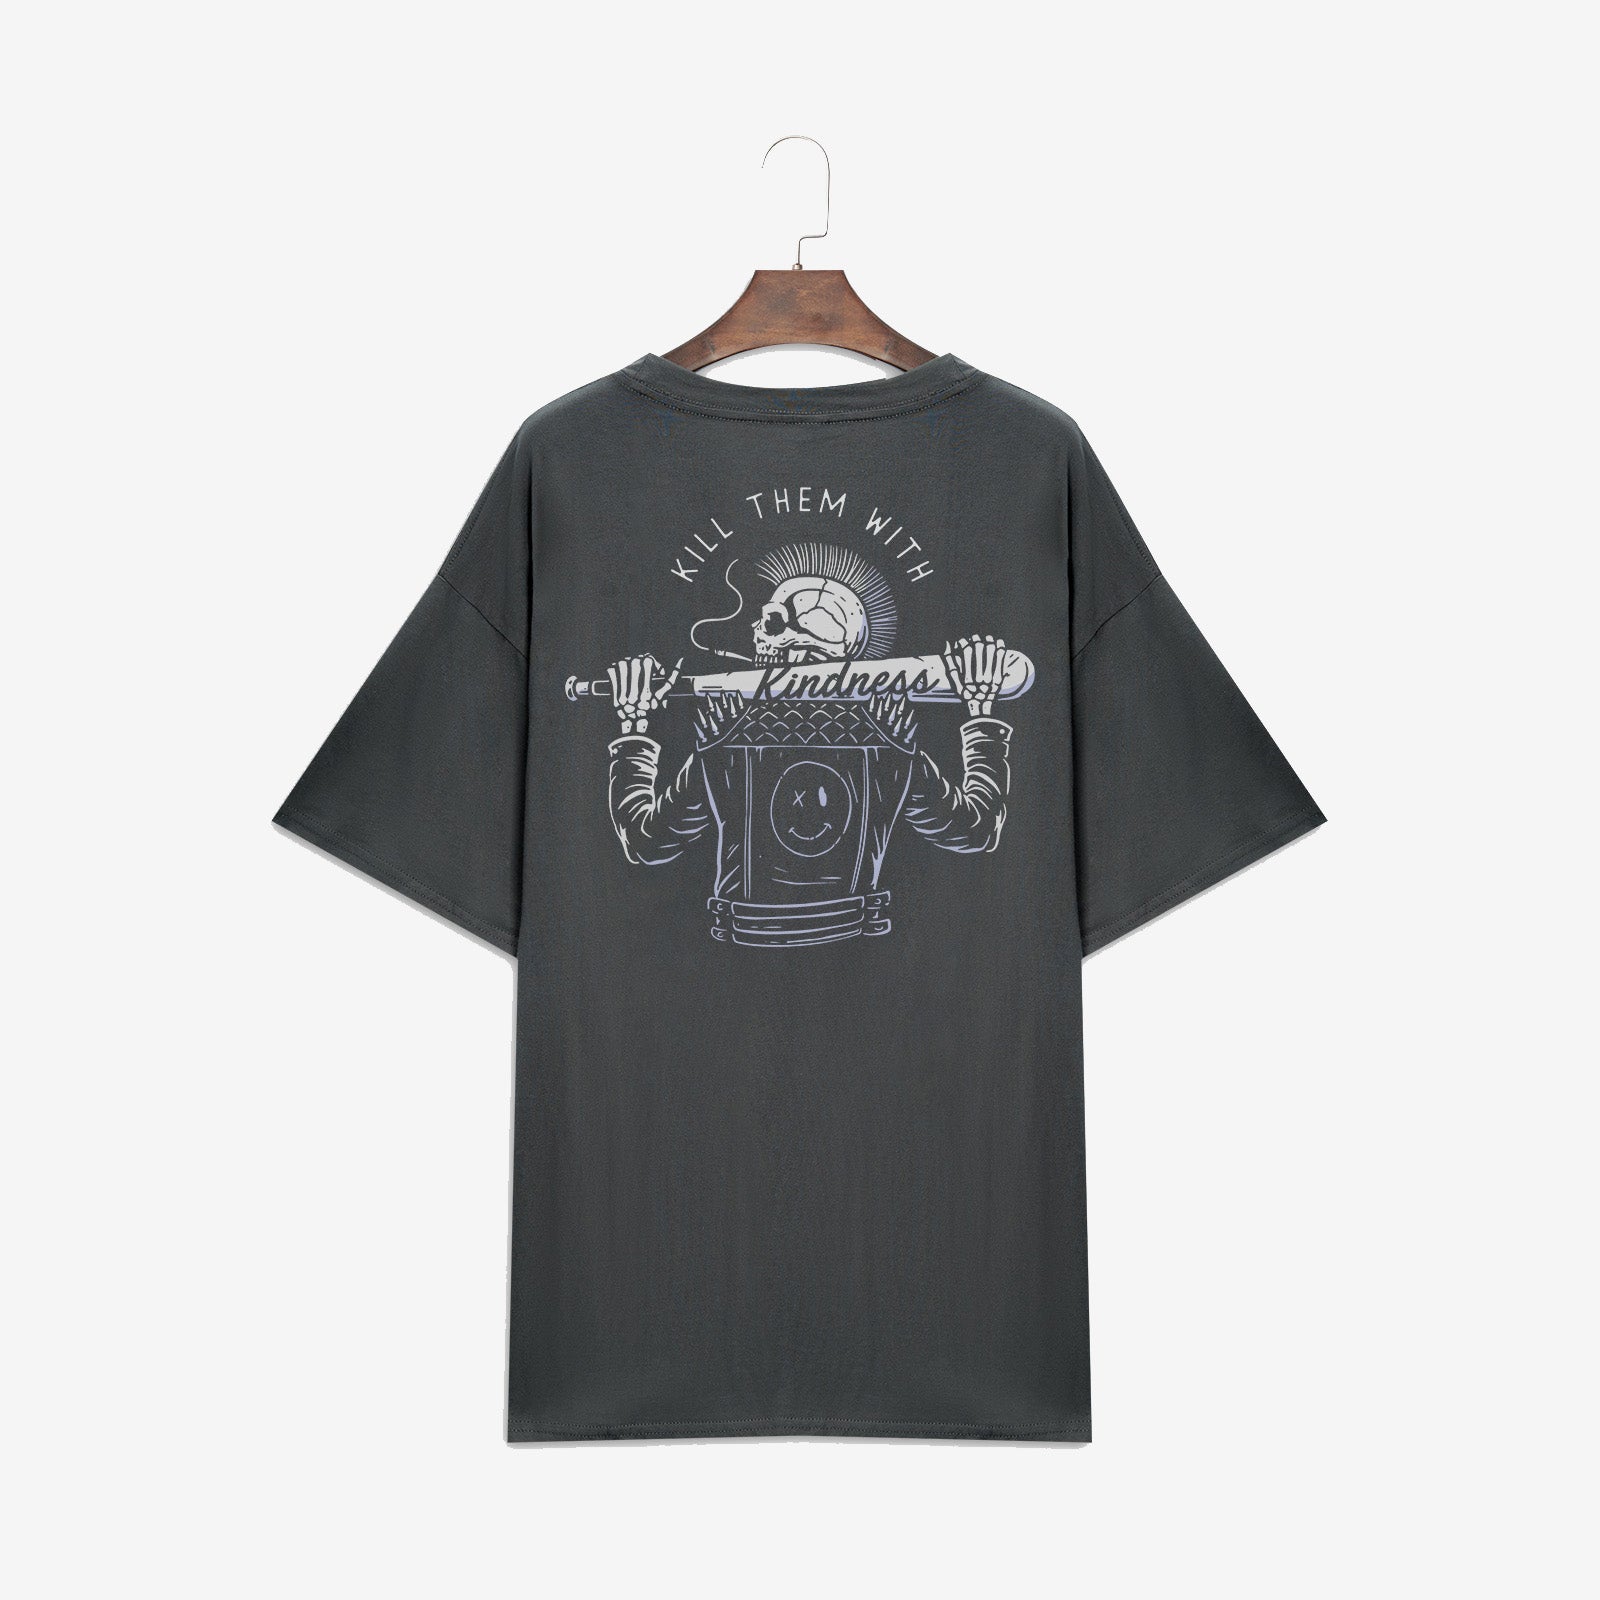 Minnieskull Baseball Bat Skull Print T-Shirt - chicyea